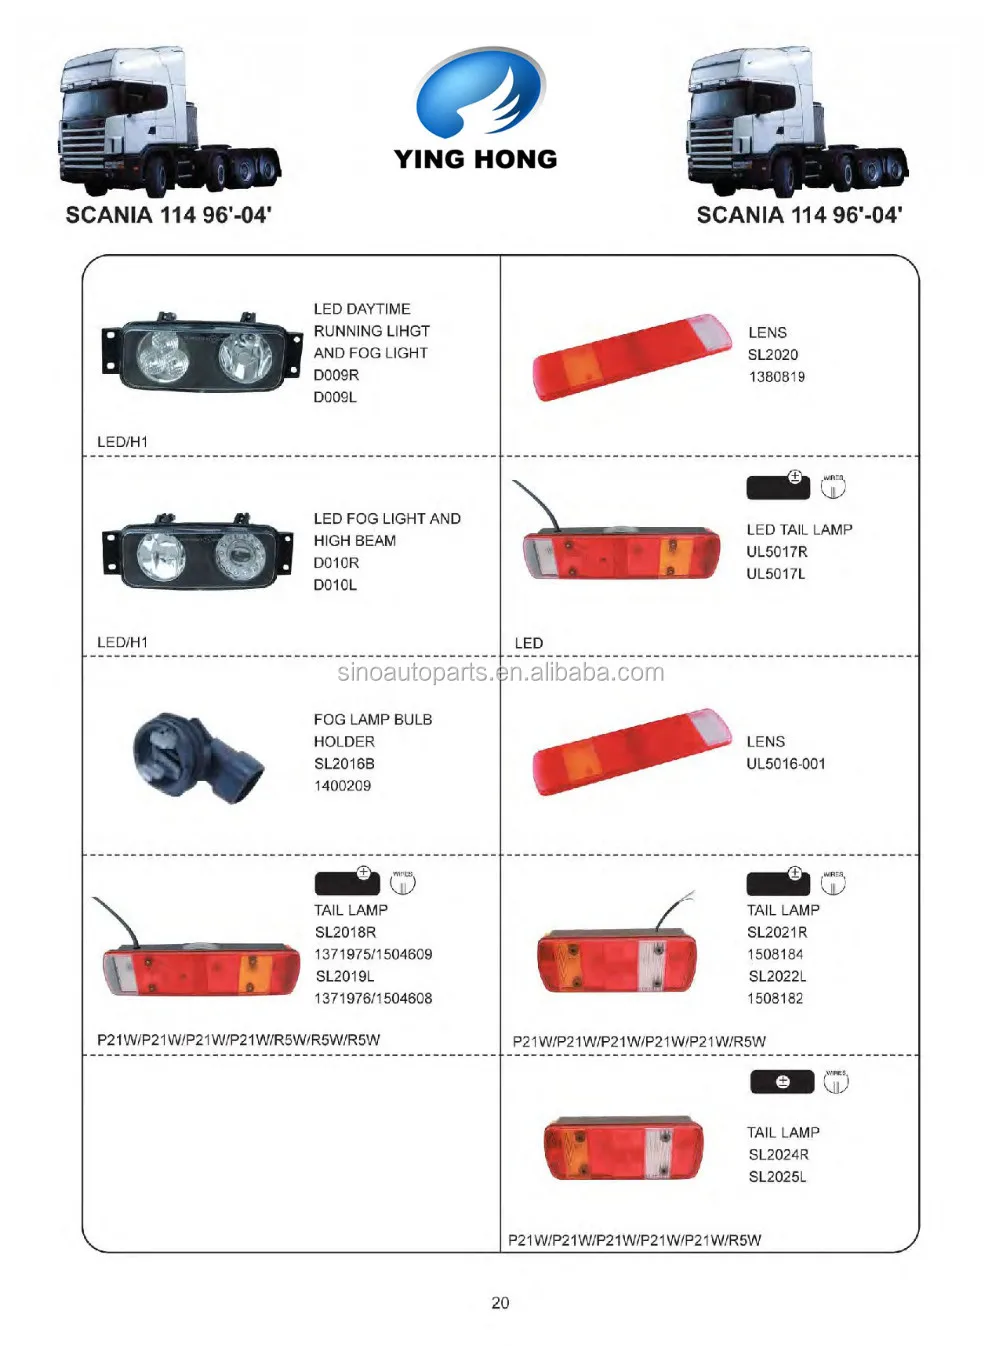 スカニアトラック用テールランプ ライト Buy テールランプ テールライト Product On Alibaba Com